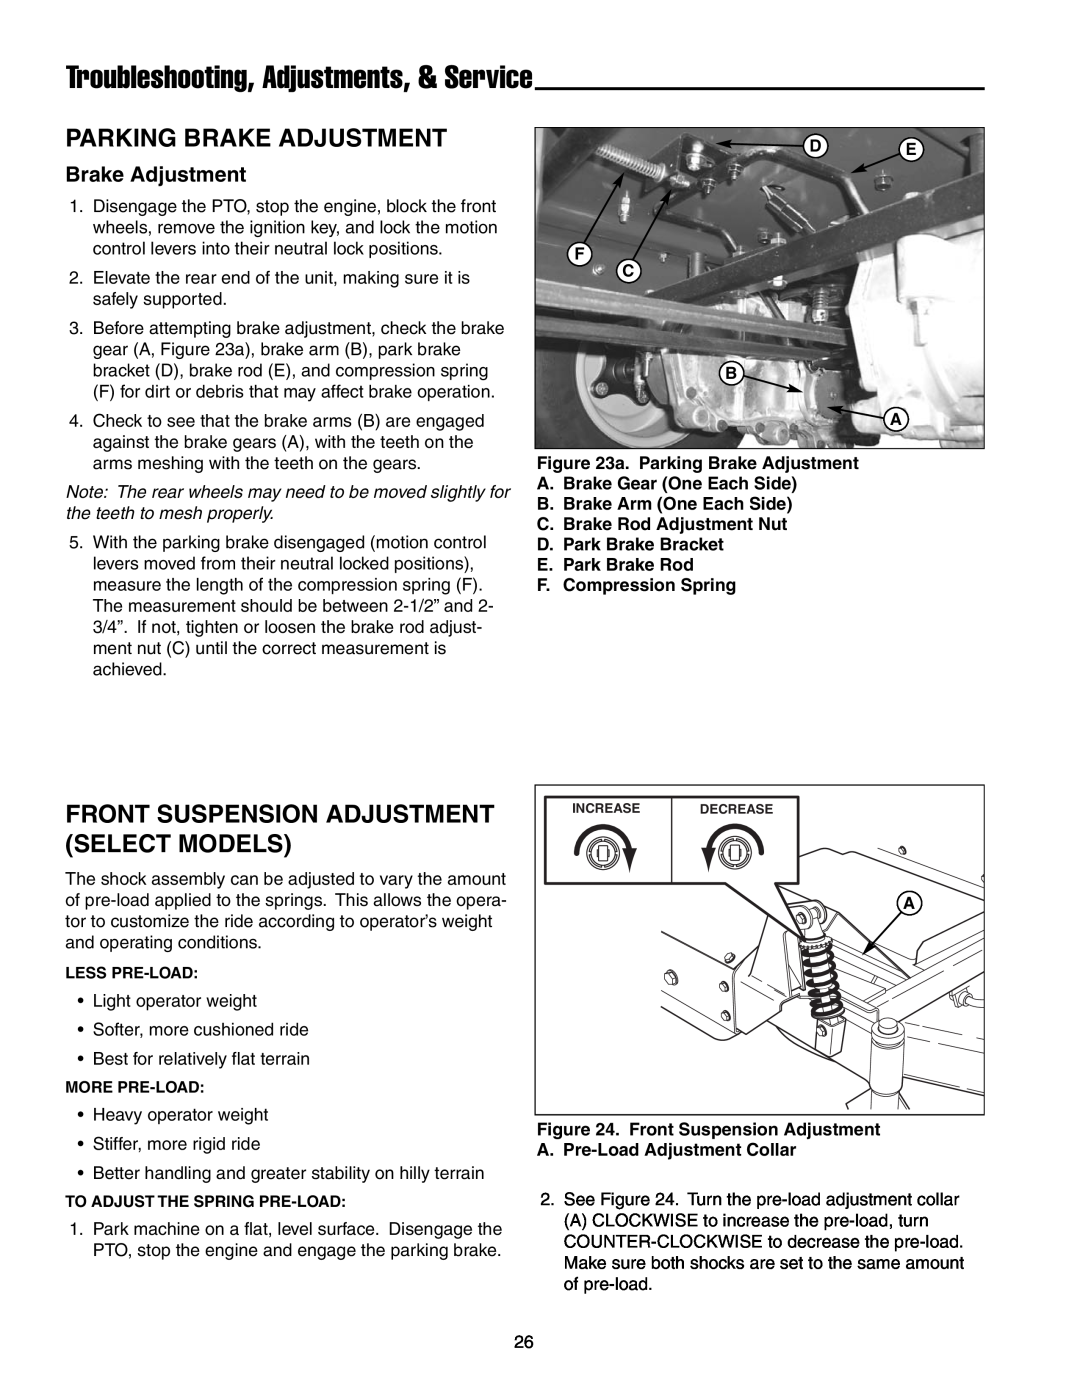 Snapper RZT20440BVE2 manual Parking Brake Adjustment, Front Suspension Adjustment Select Models, F. Compression Spring 